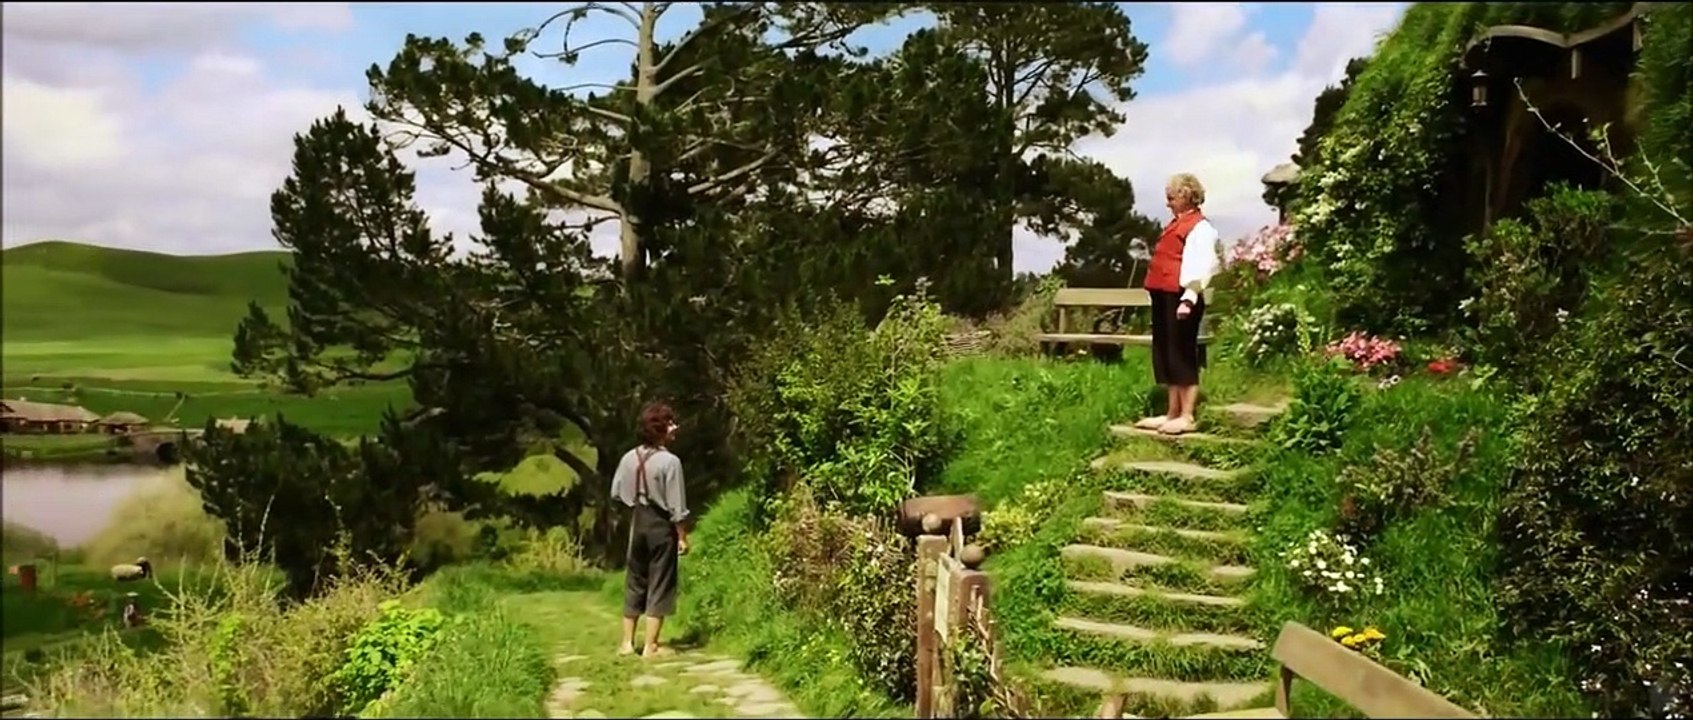 Der Hobbit: Eine unerwartete Reise Trailer DF